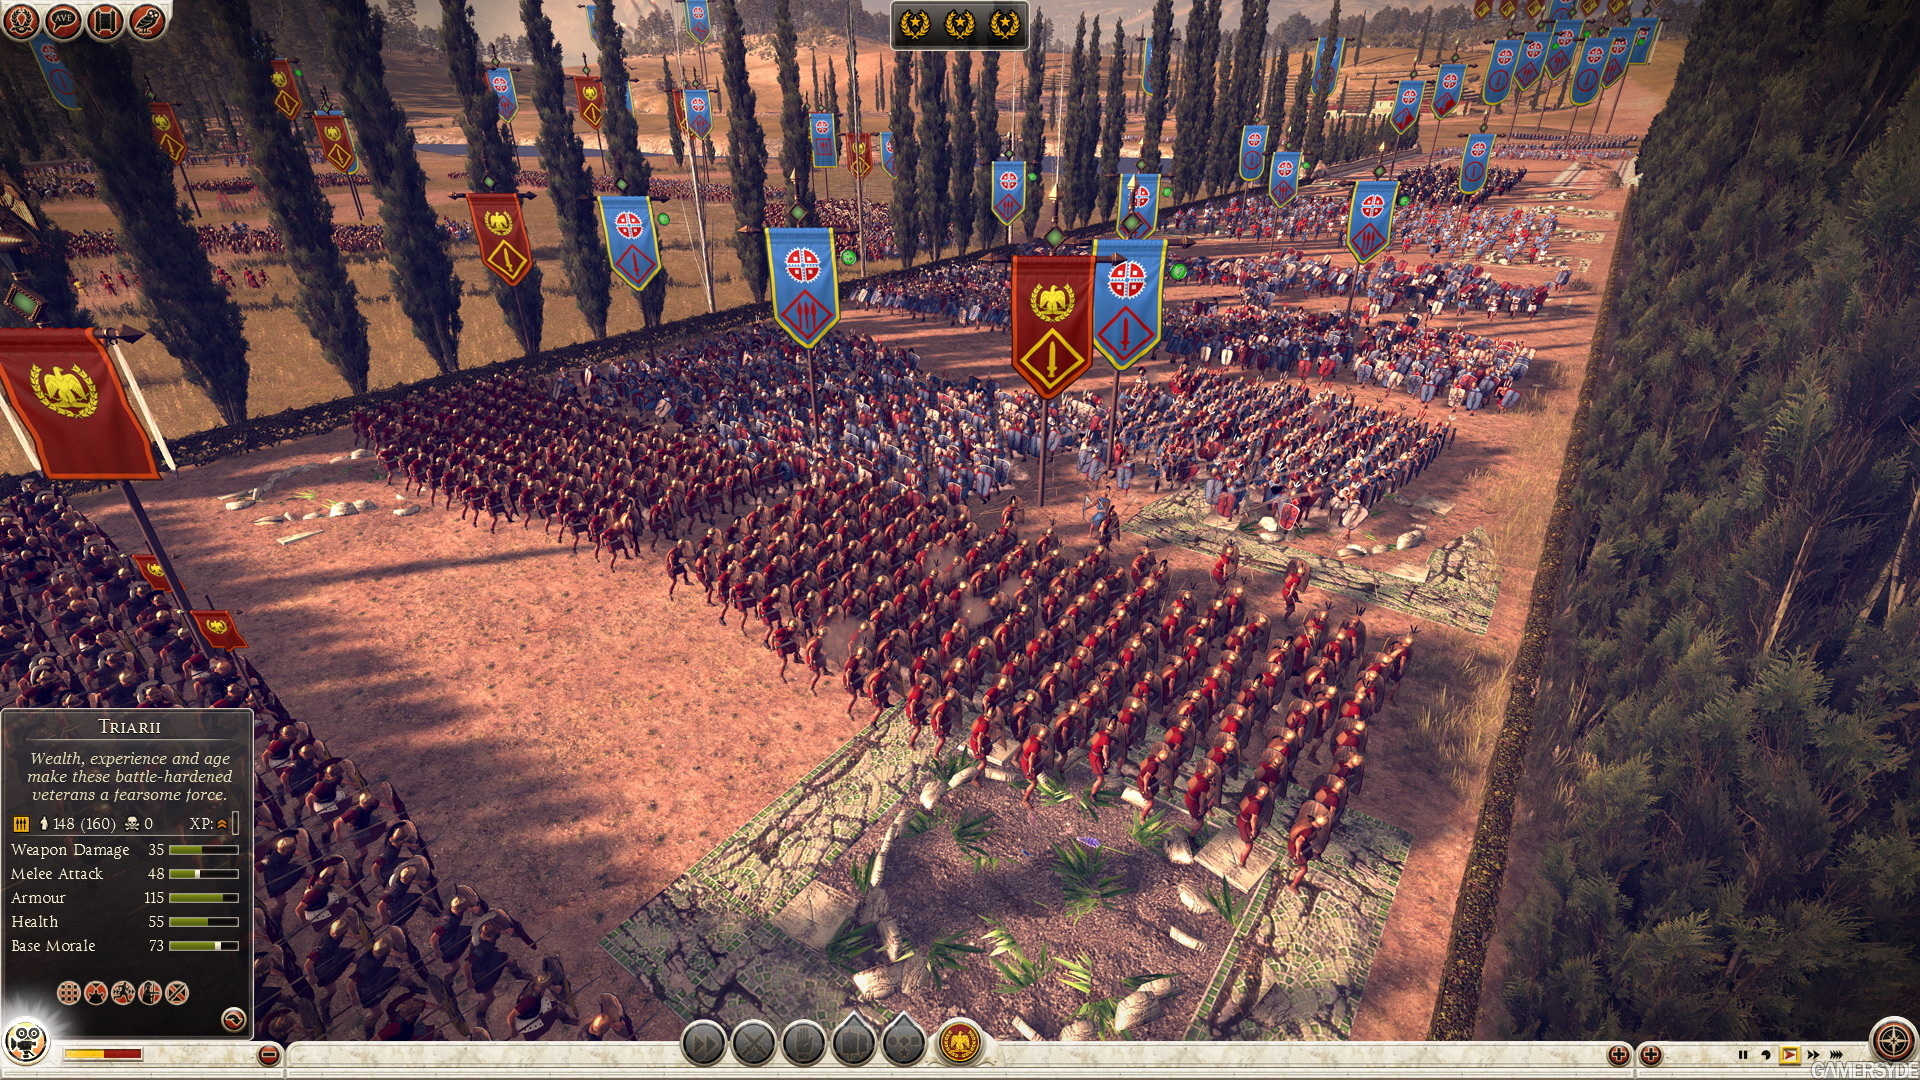 image total war rome ii 22739 2544 0003 چند تصویر جدید از عنوان Total War Rome II منتشر شد